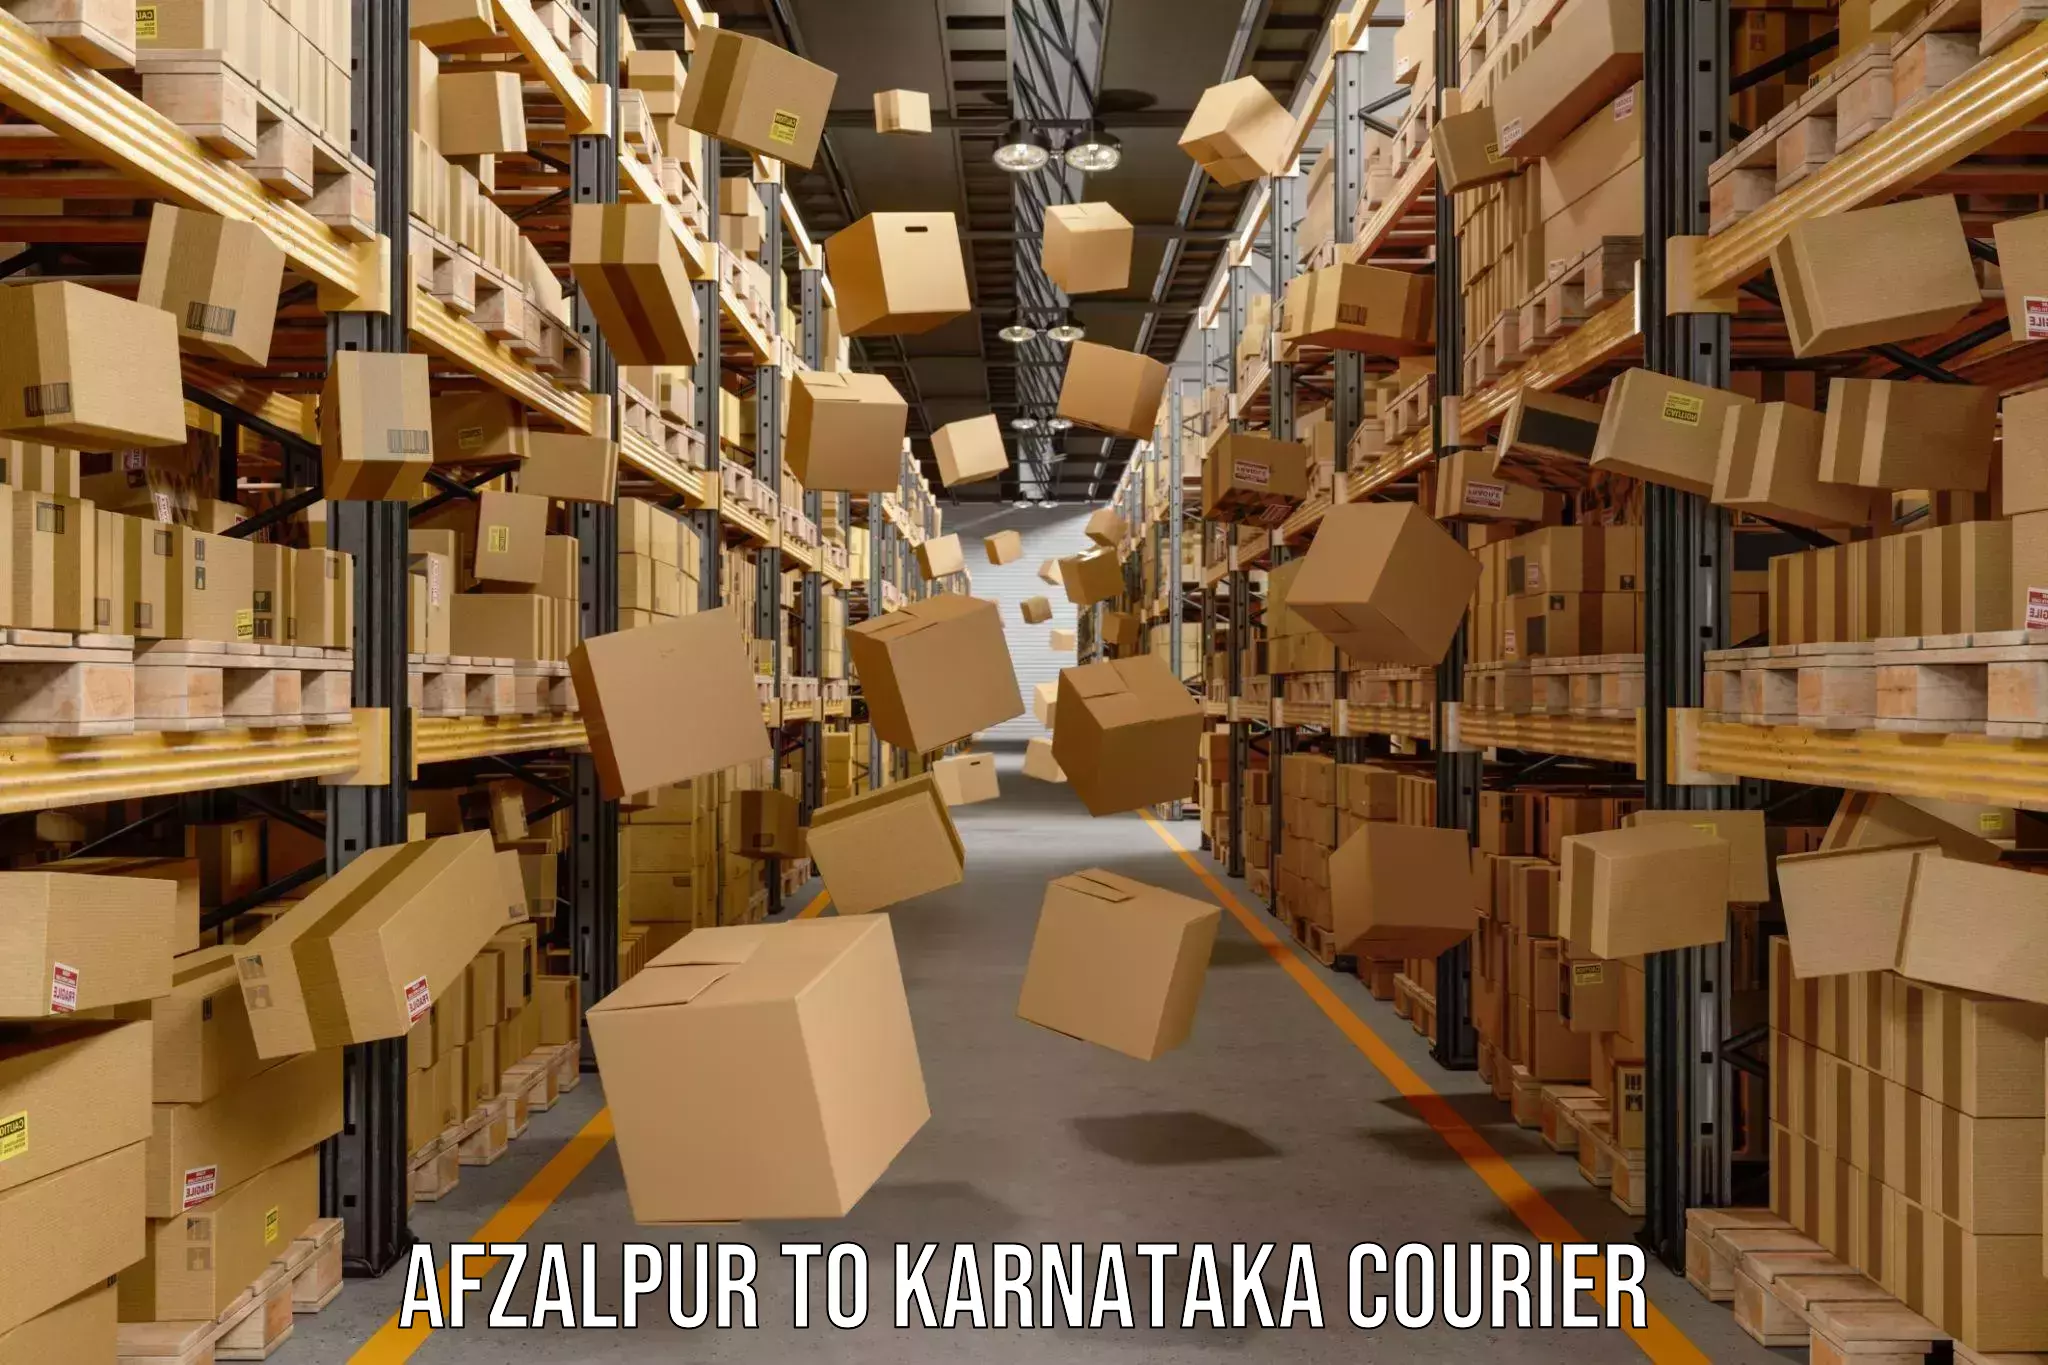 Individual parcel service Afzalpur to Kanjarakatte